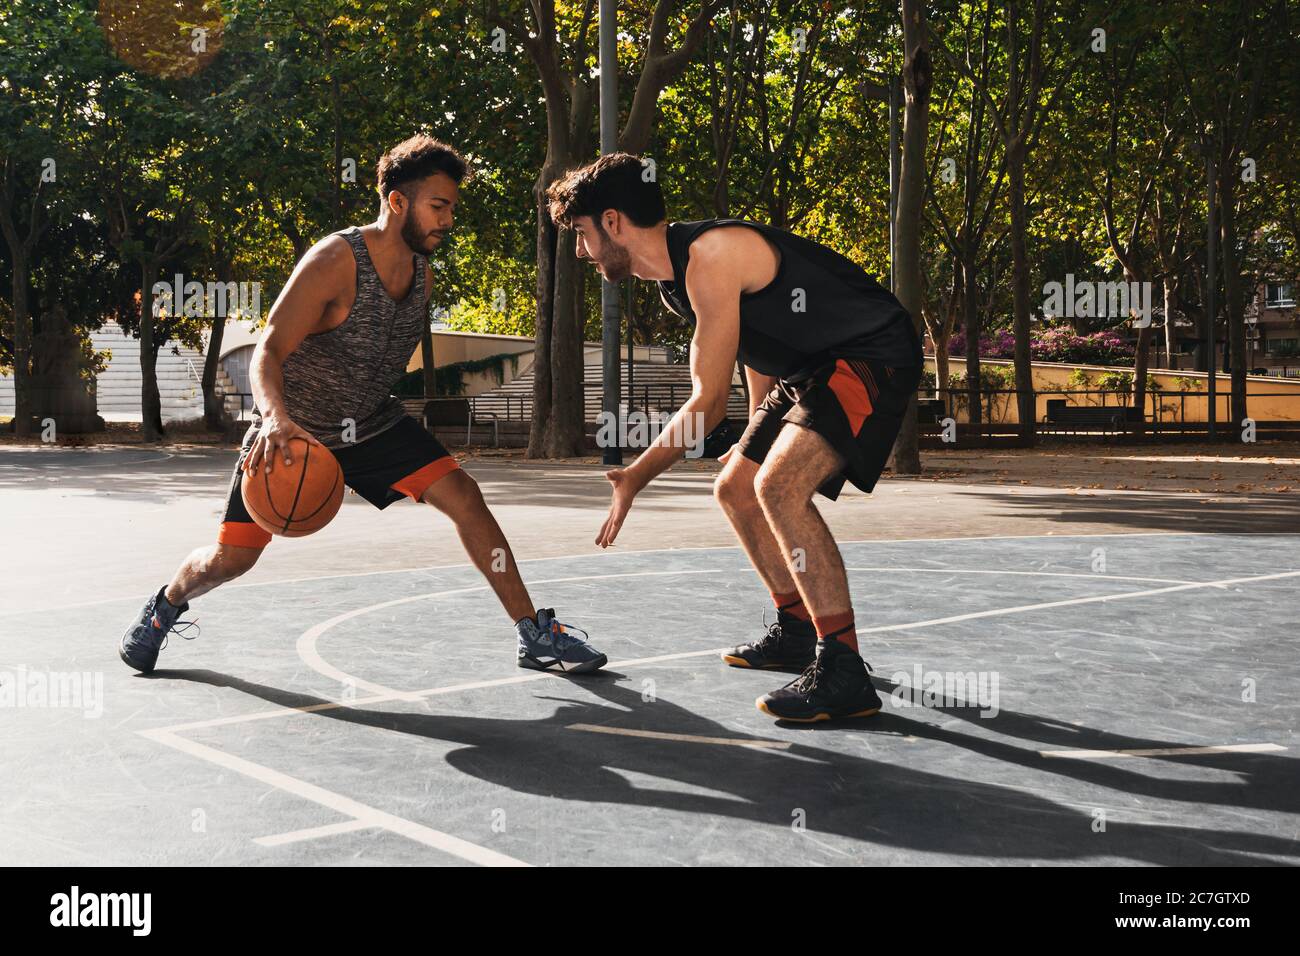 Zwei junge Männer spielen Basketball im Freien kämpfen um den Ball Stockfoto